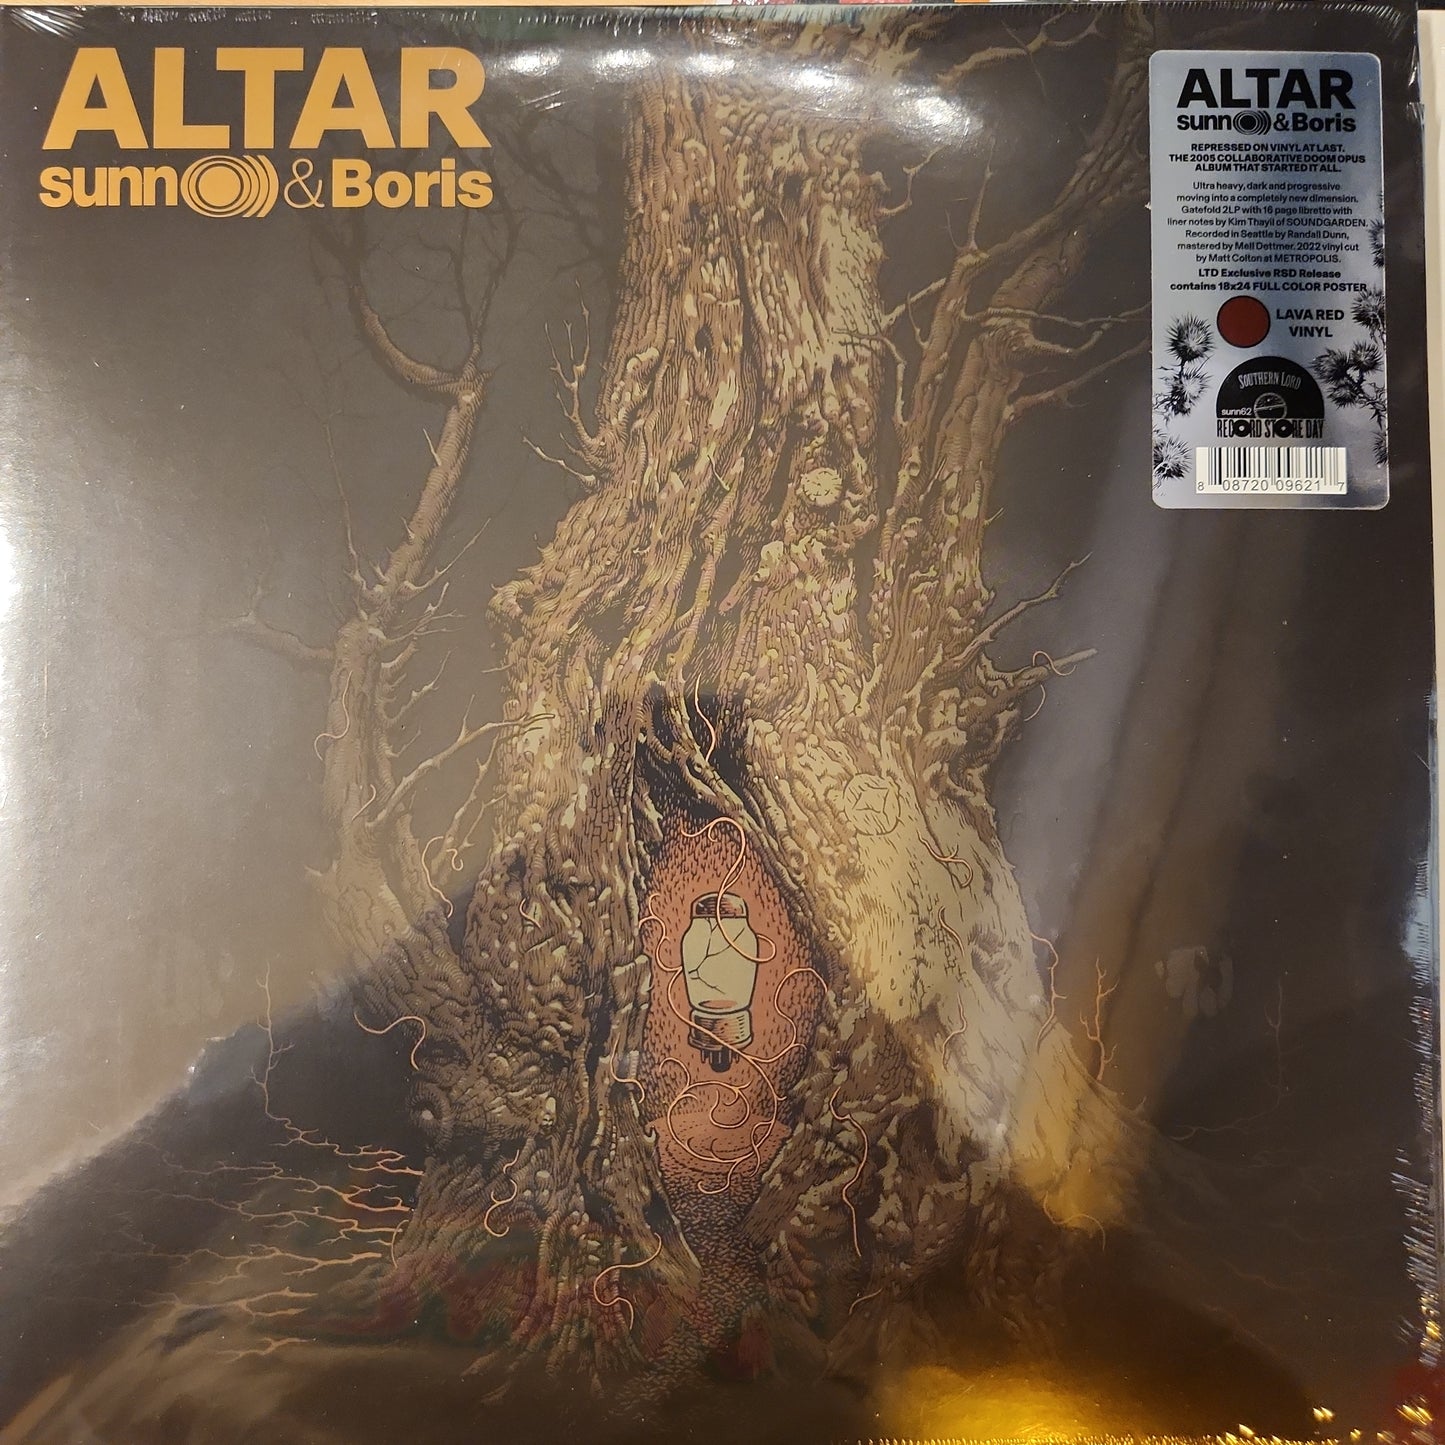 Sunn O))) and Boris - Altar - Limited Double Vinyl LP